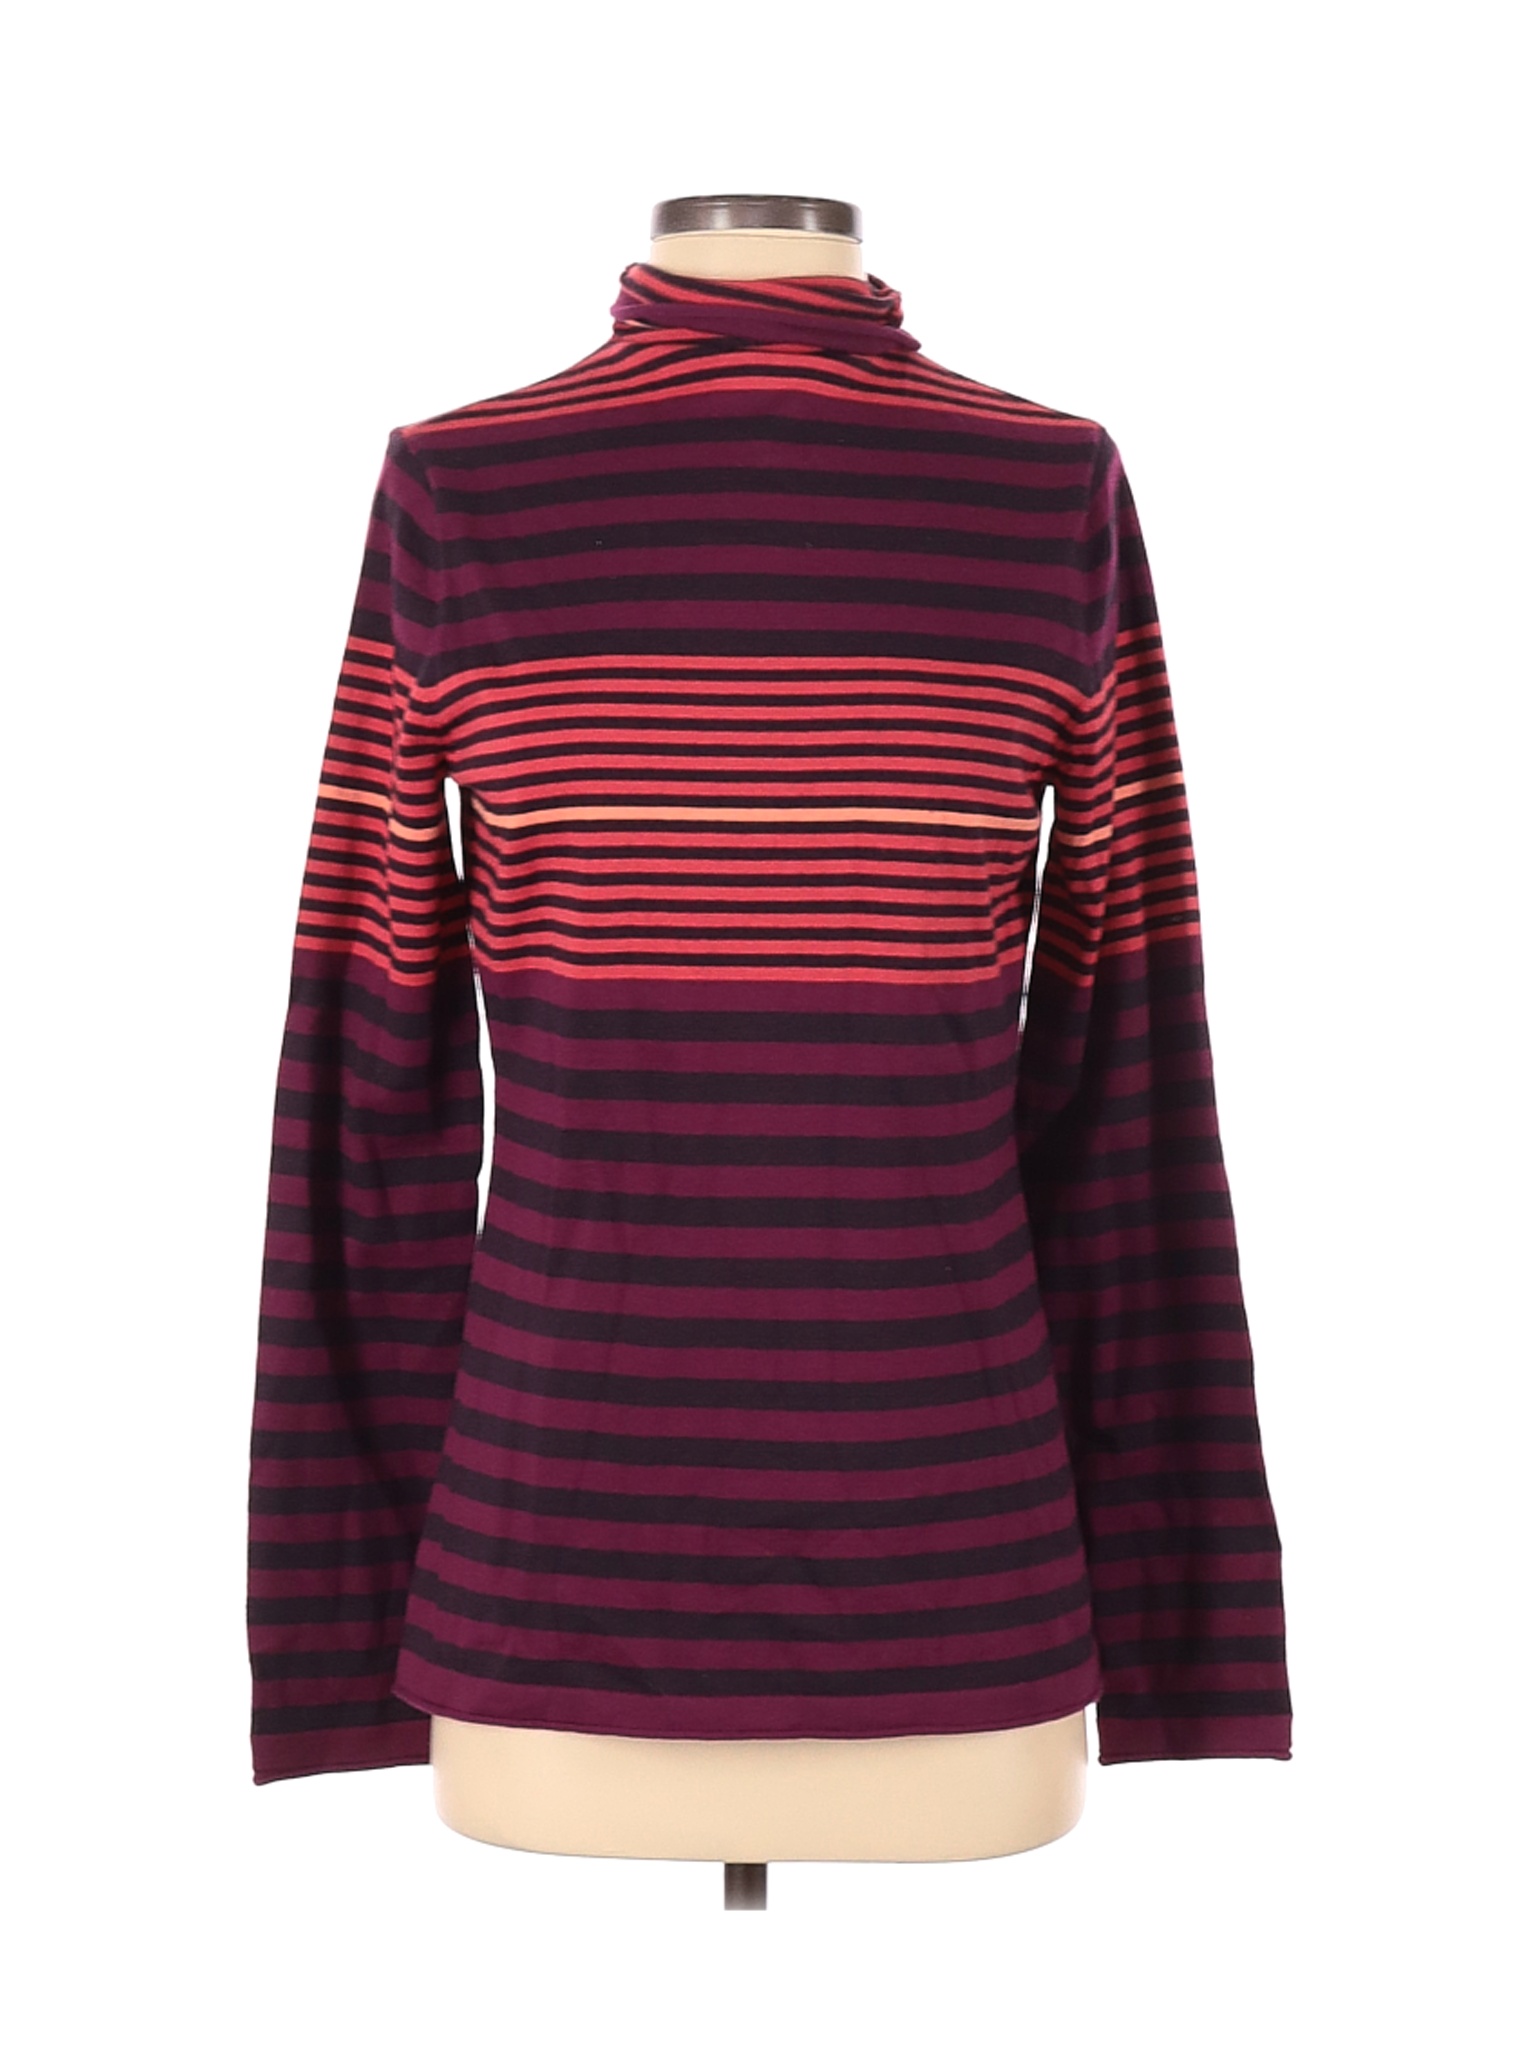 Duluth Trading Co. Women Purple Turtleneck Sweater S | eBay